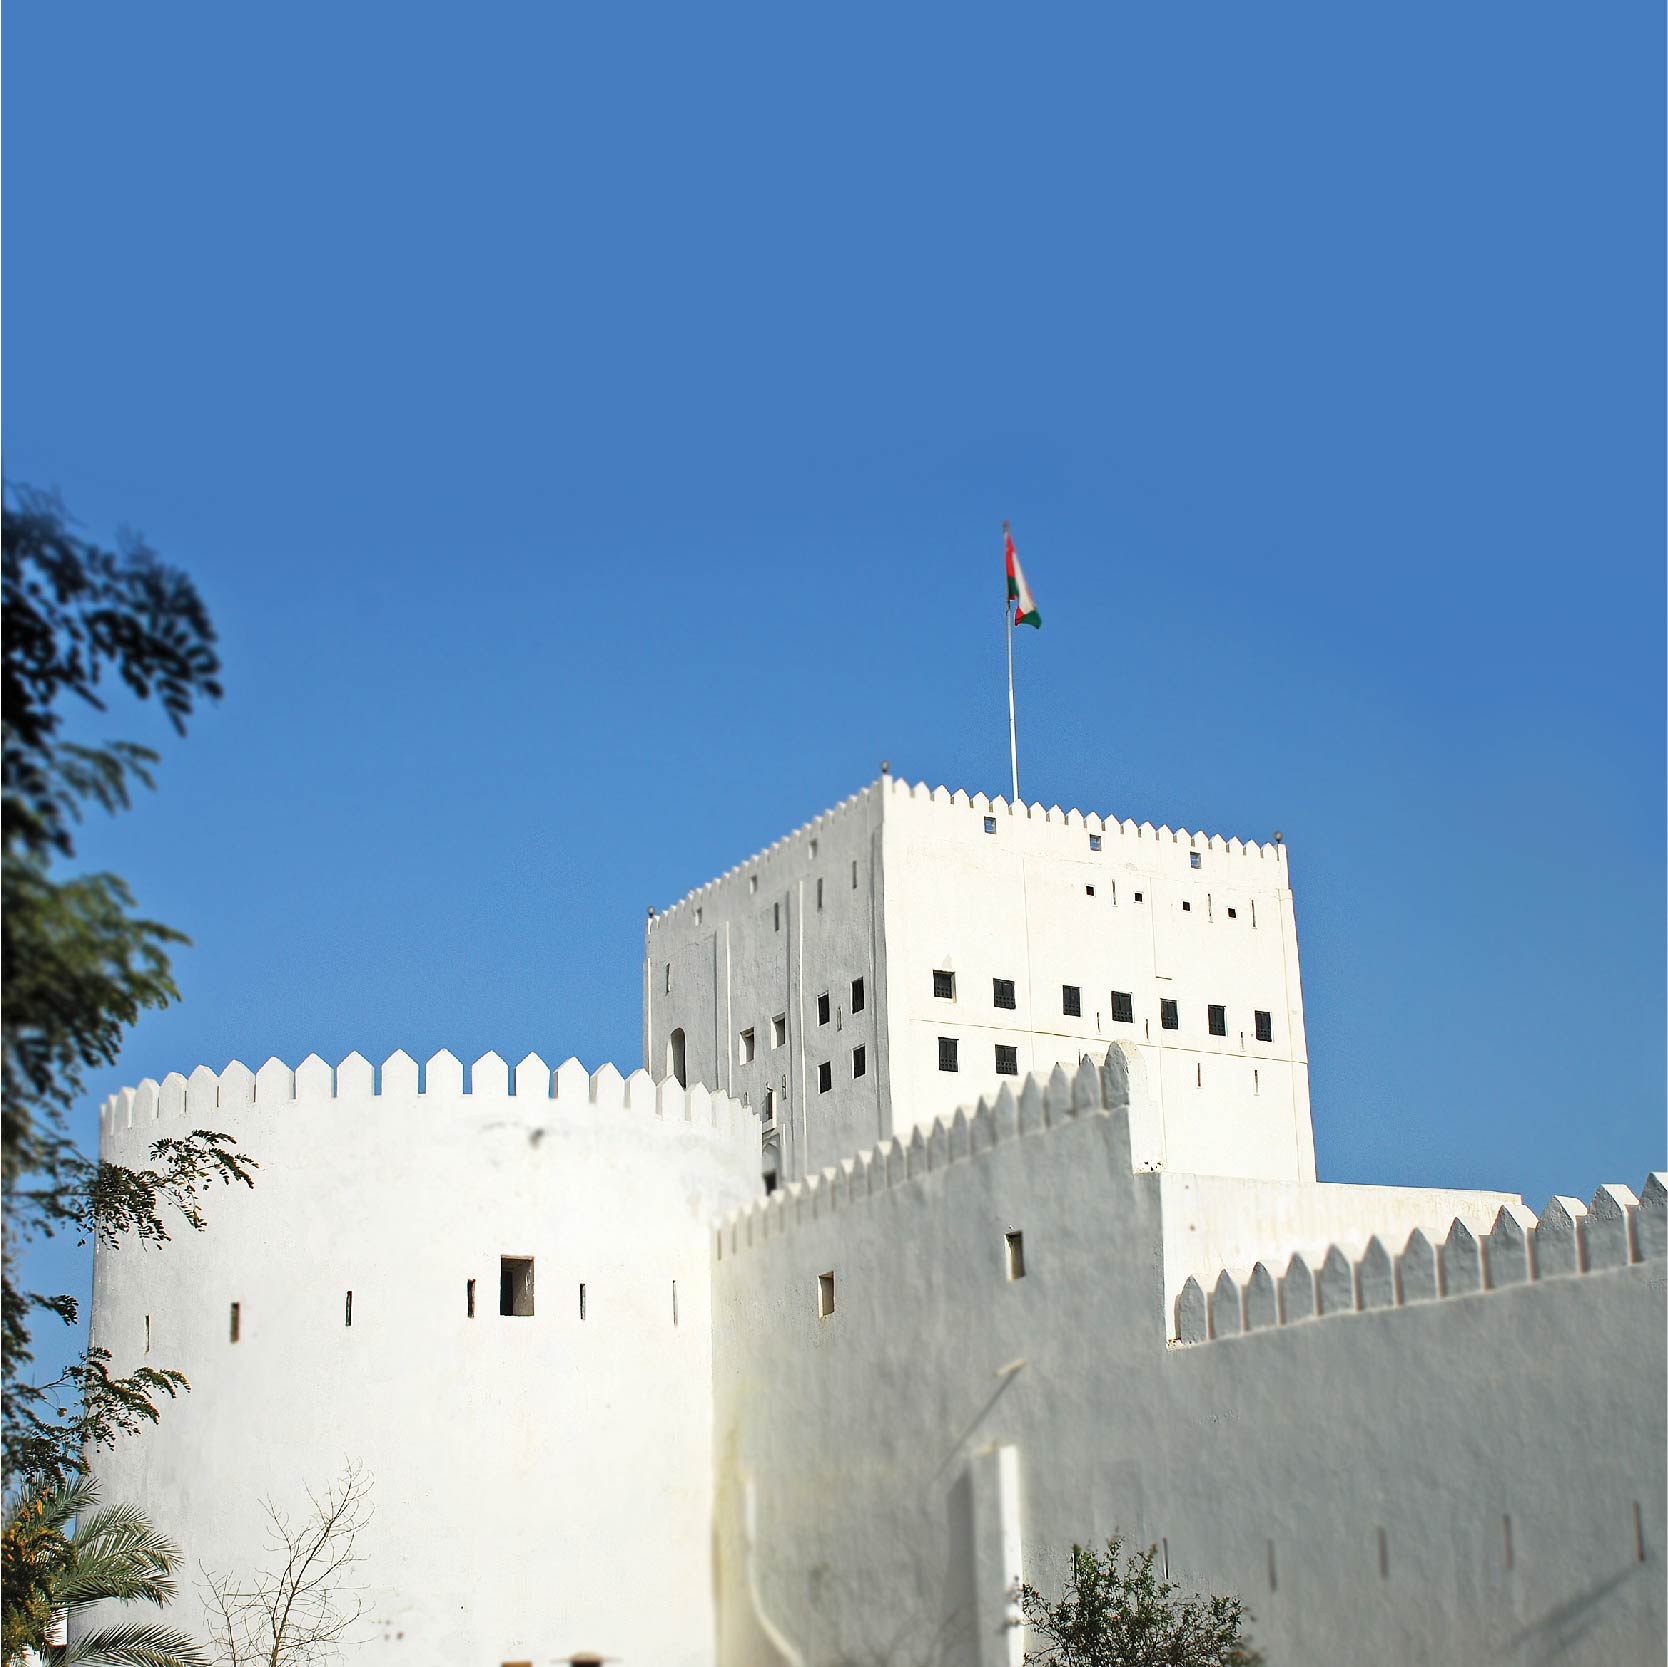 Suhar, Oman